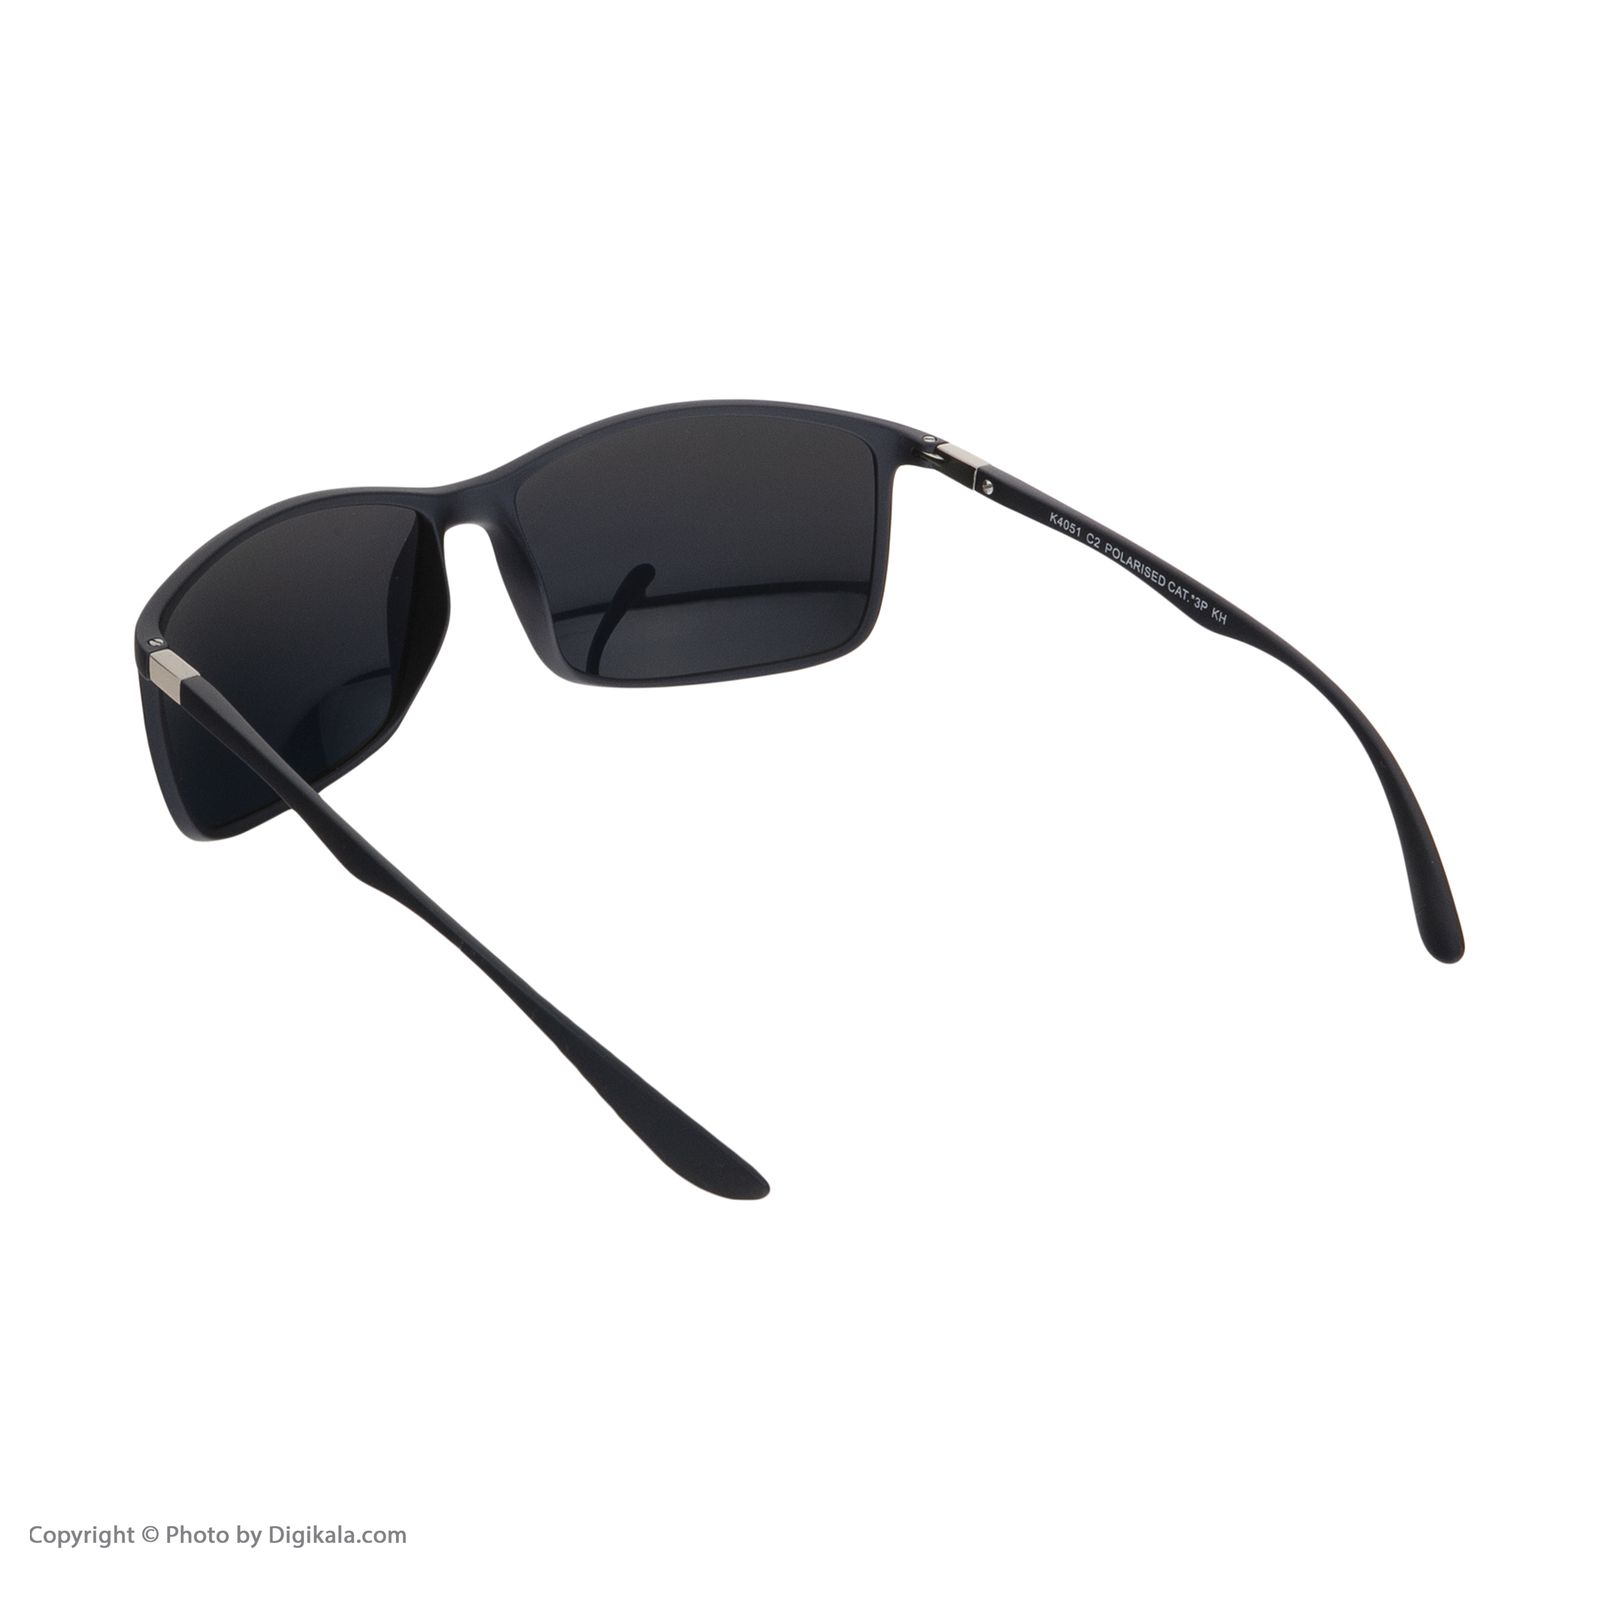 عینک آفتابی مردانه کلارک بای تروی کولیزوم مدل k4051-c2 -  - 5